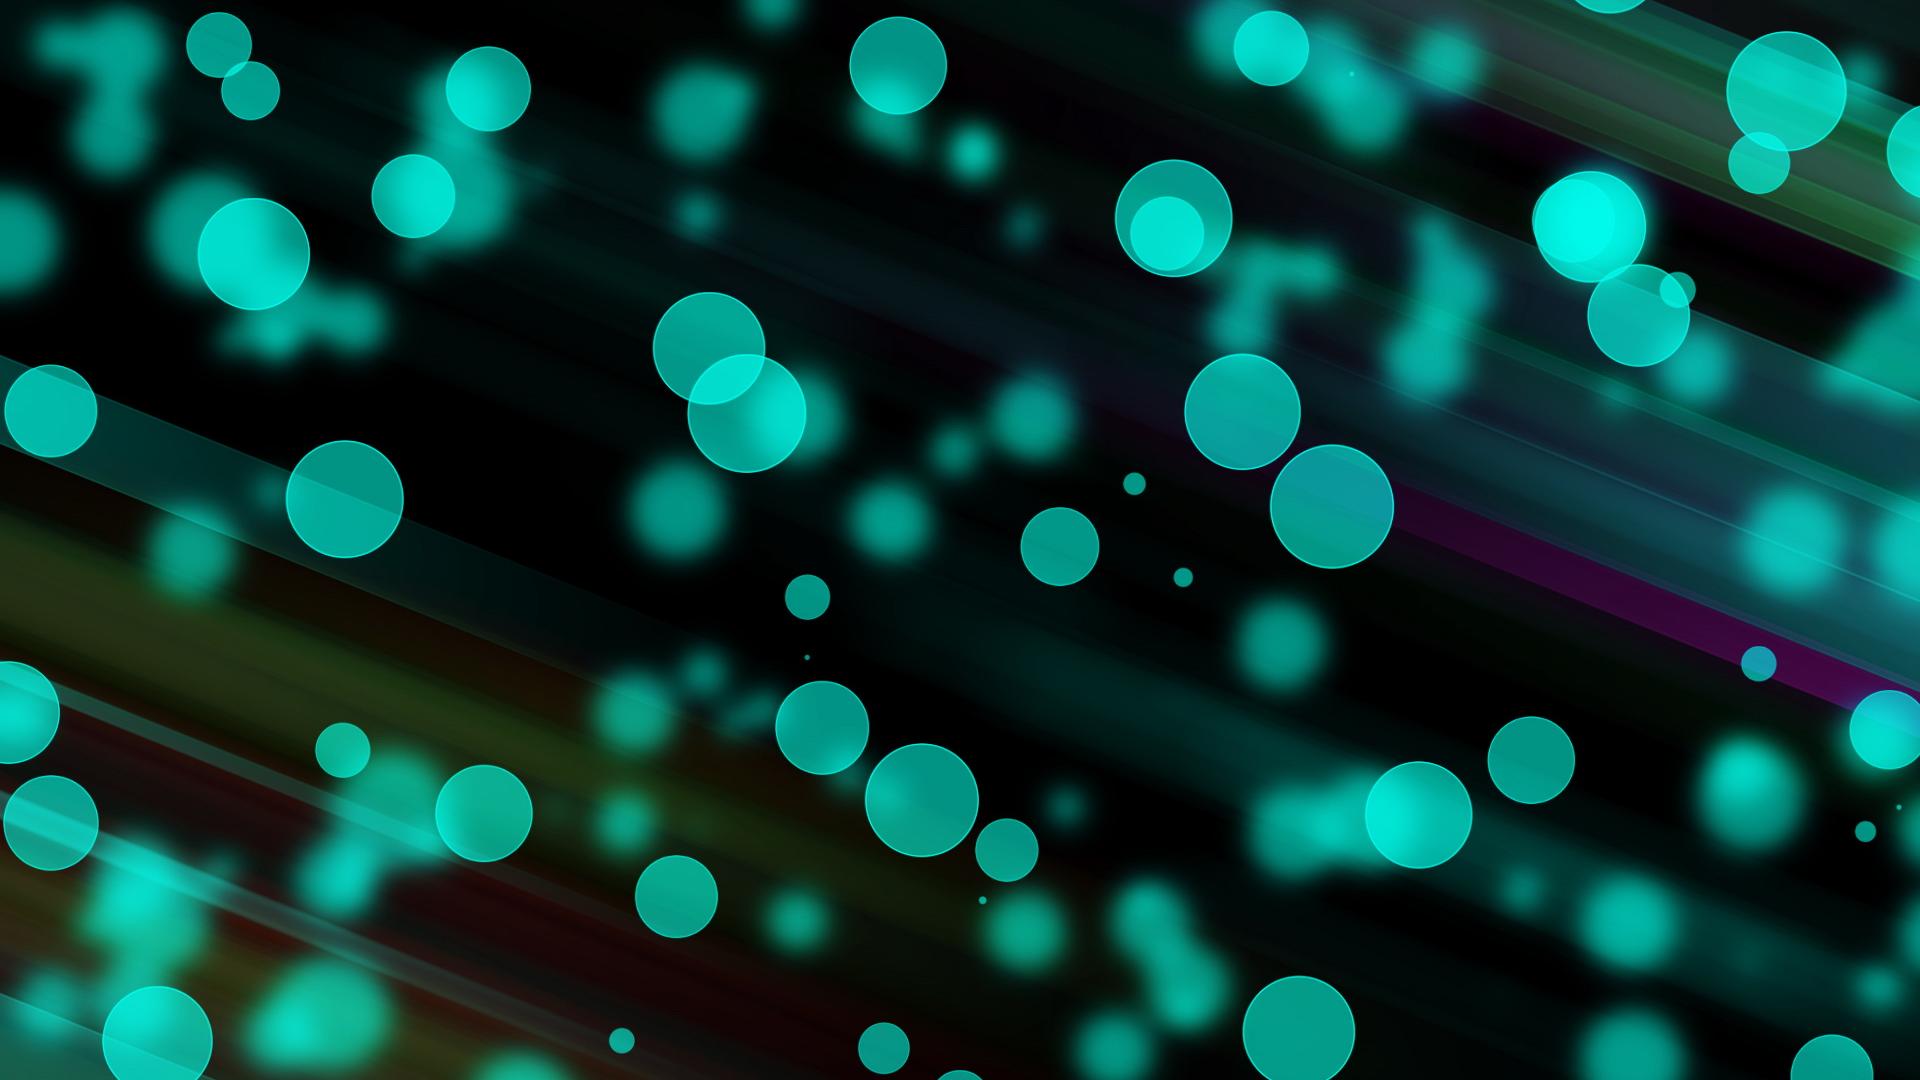 Neon Backgrounds free download | PixelsTalk.Net